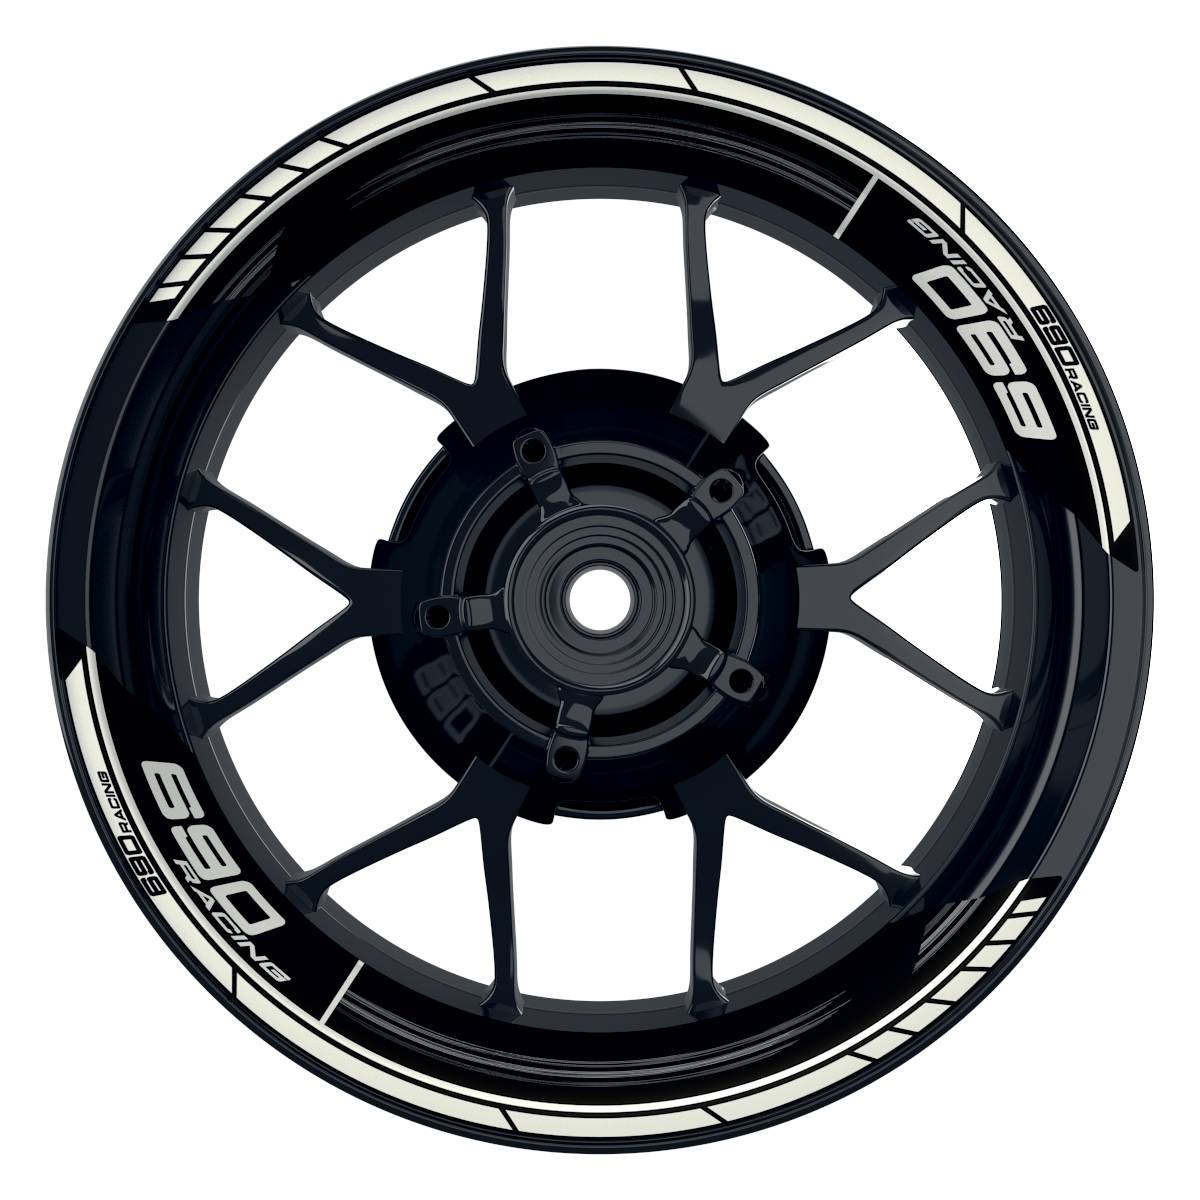 KTM Racing 690 Scratched schwarz weiss Frontansicht